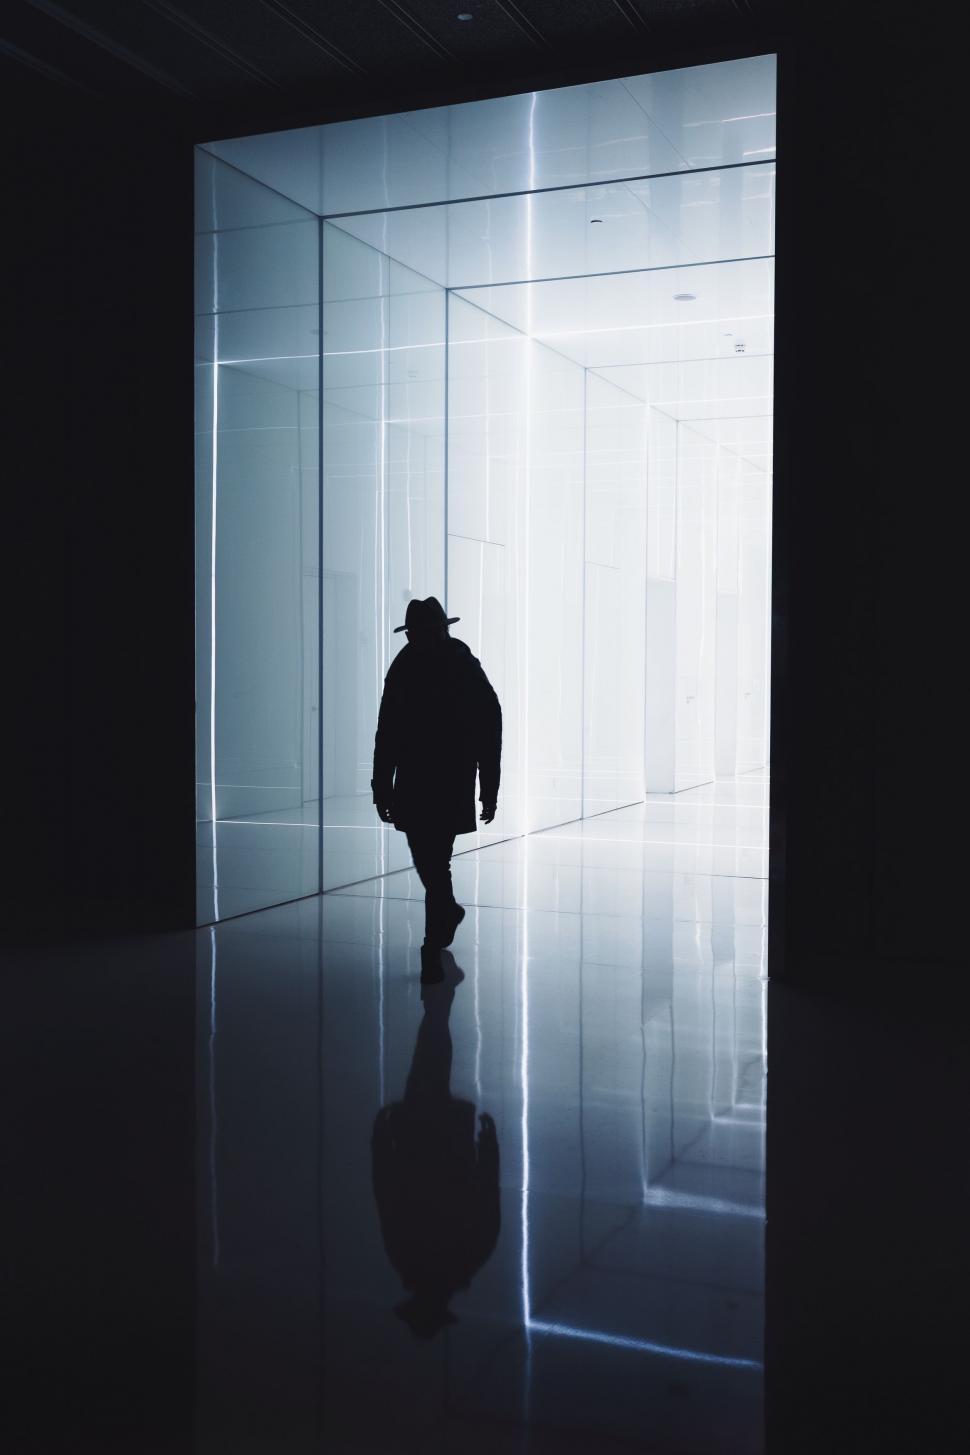 Free Image of Man Walking Through Dark Room 